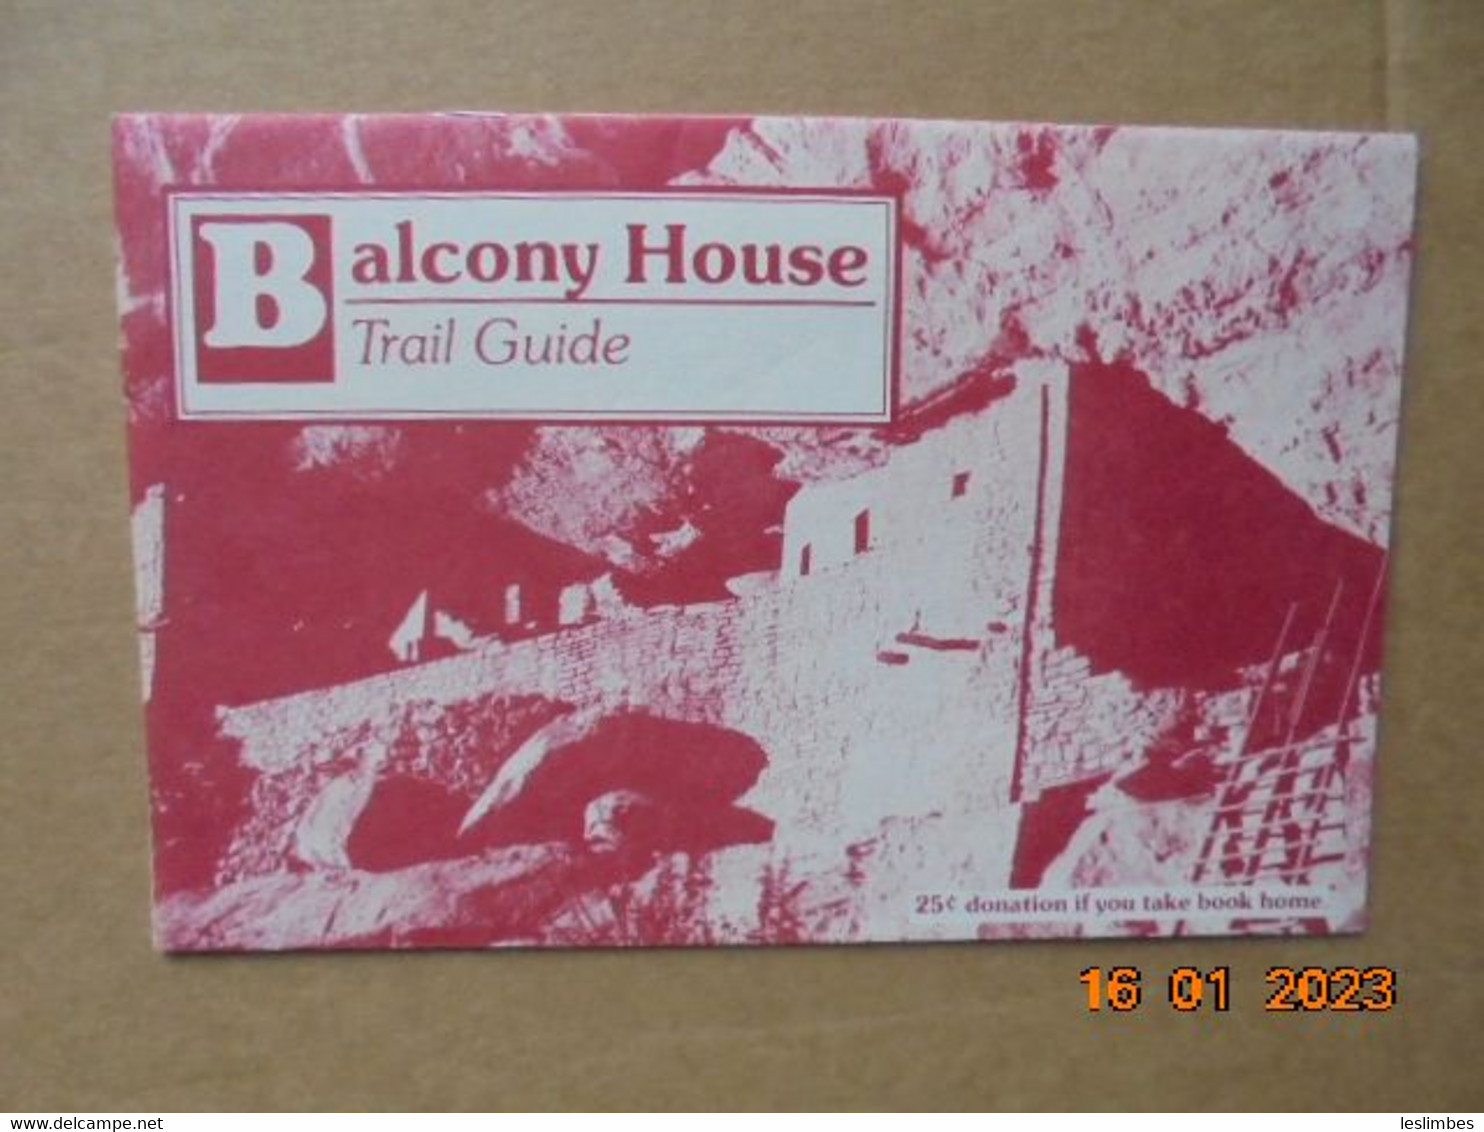 Balcony House Trail Guide, Mesa Verde National Park, Colorado - USA